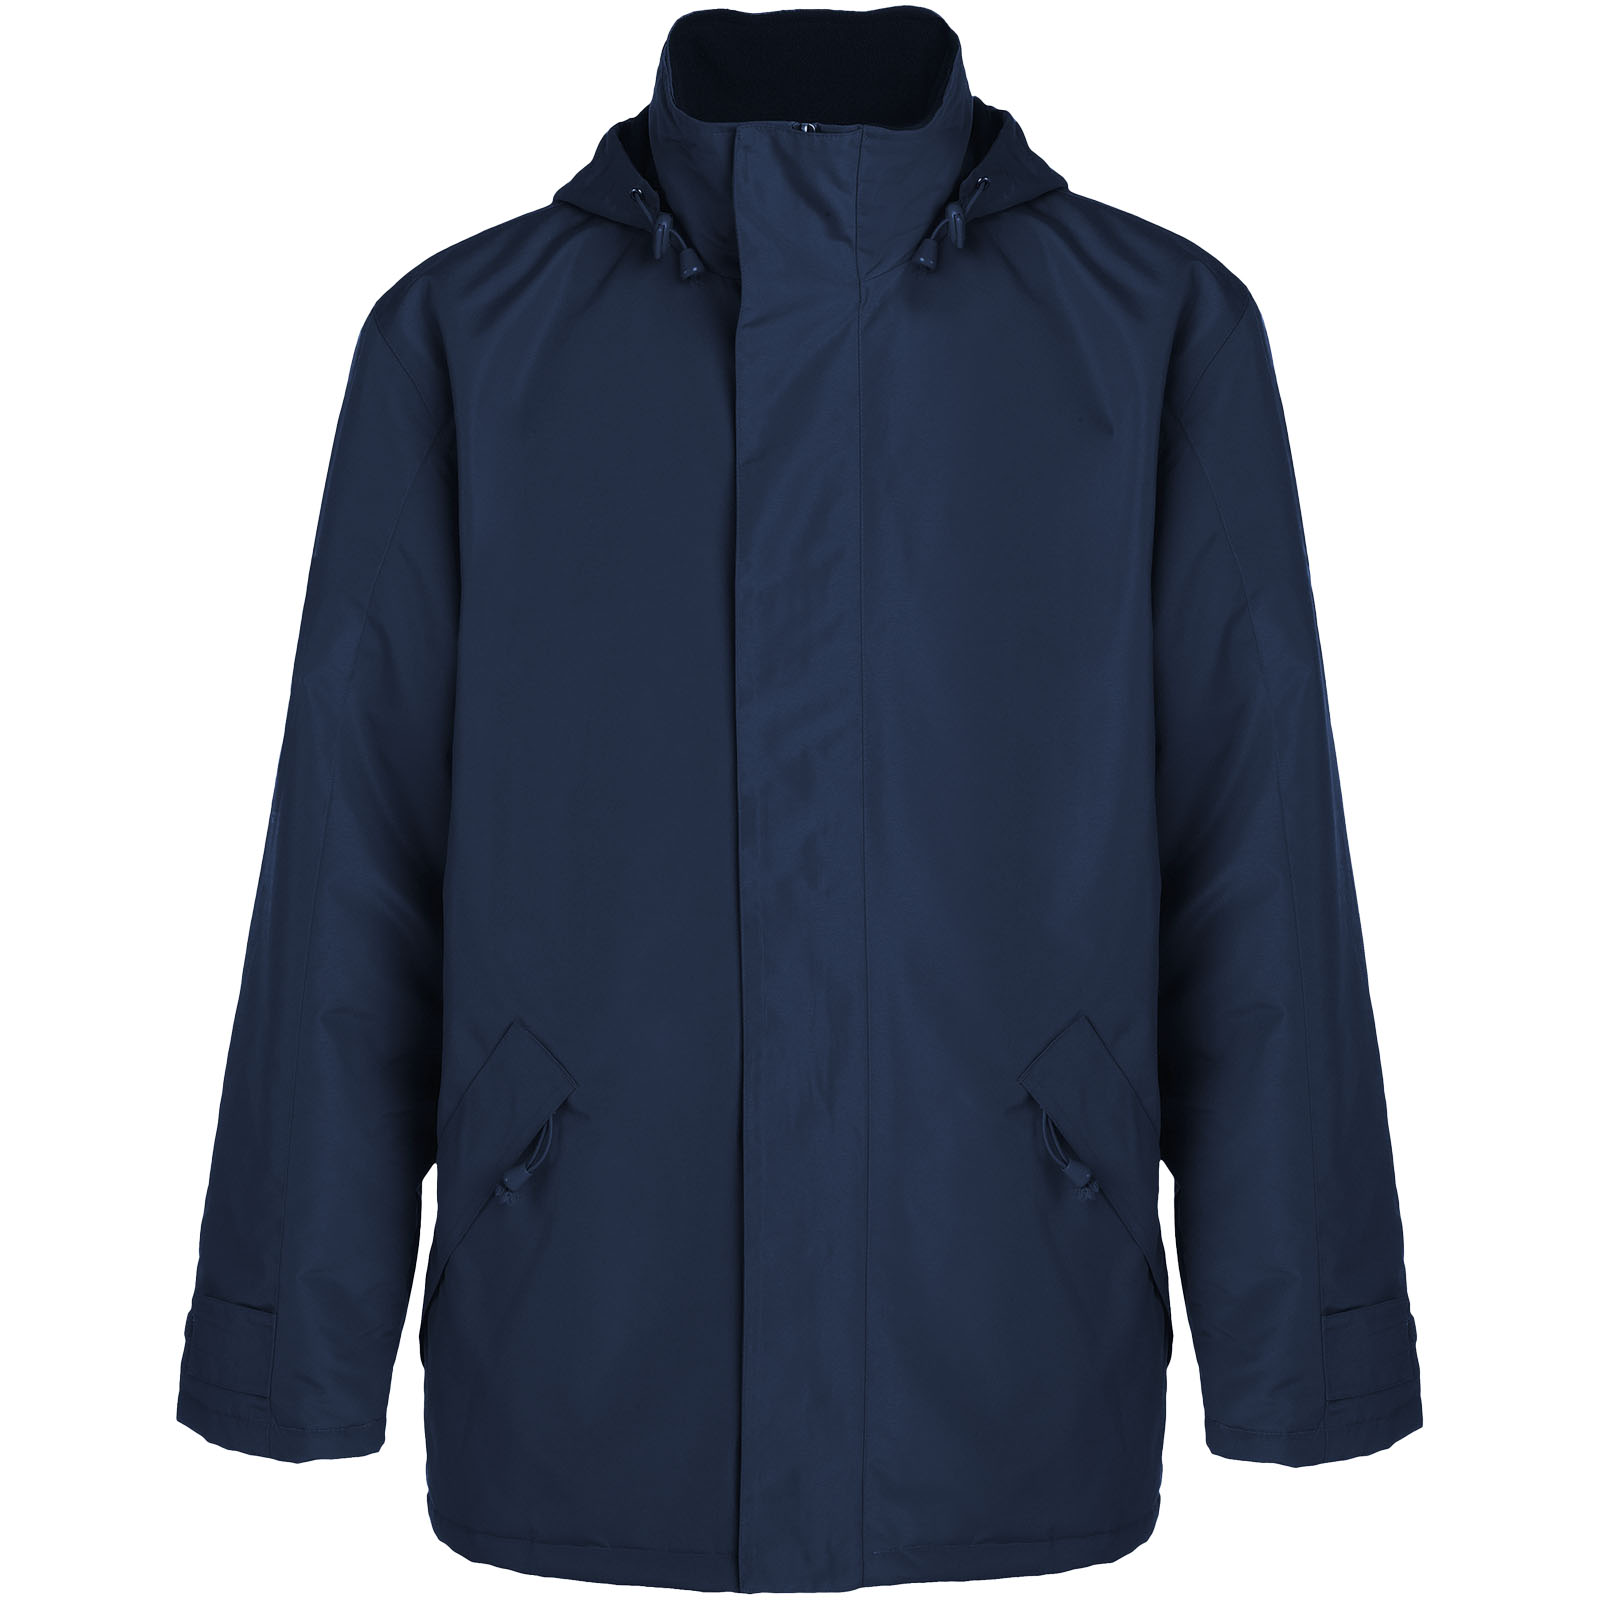 Advertising Jackets - Europa unisex insulated jacket - 0